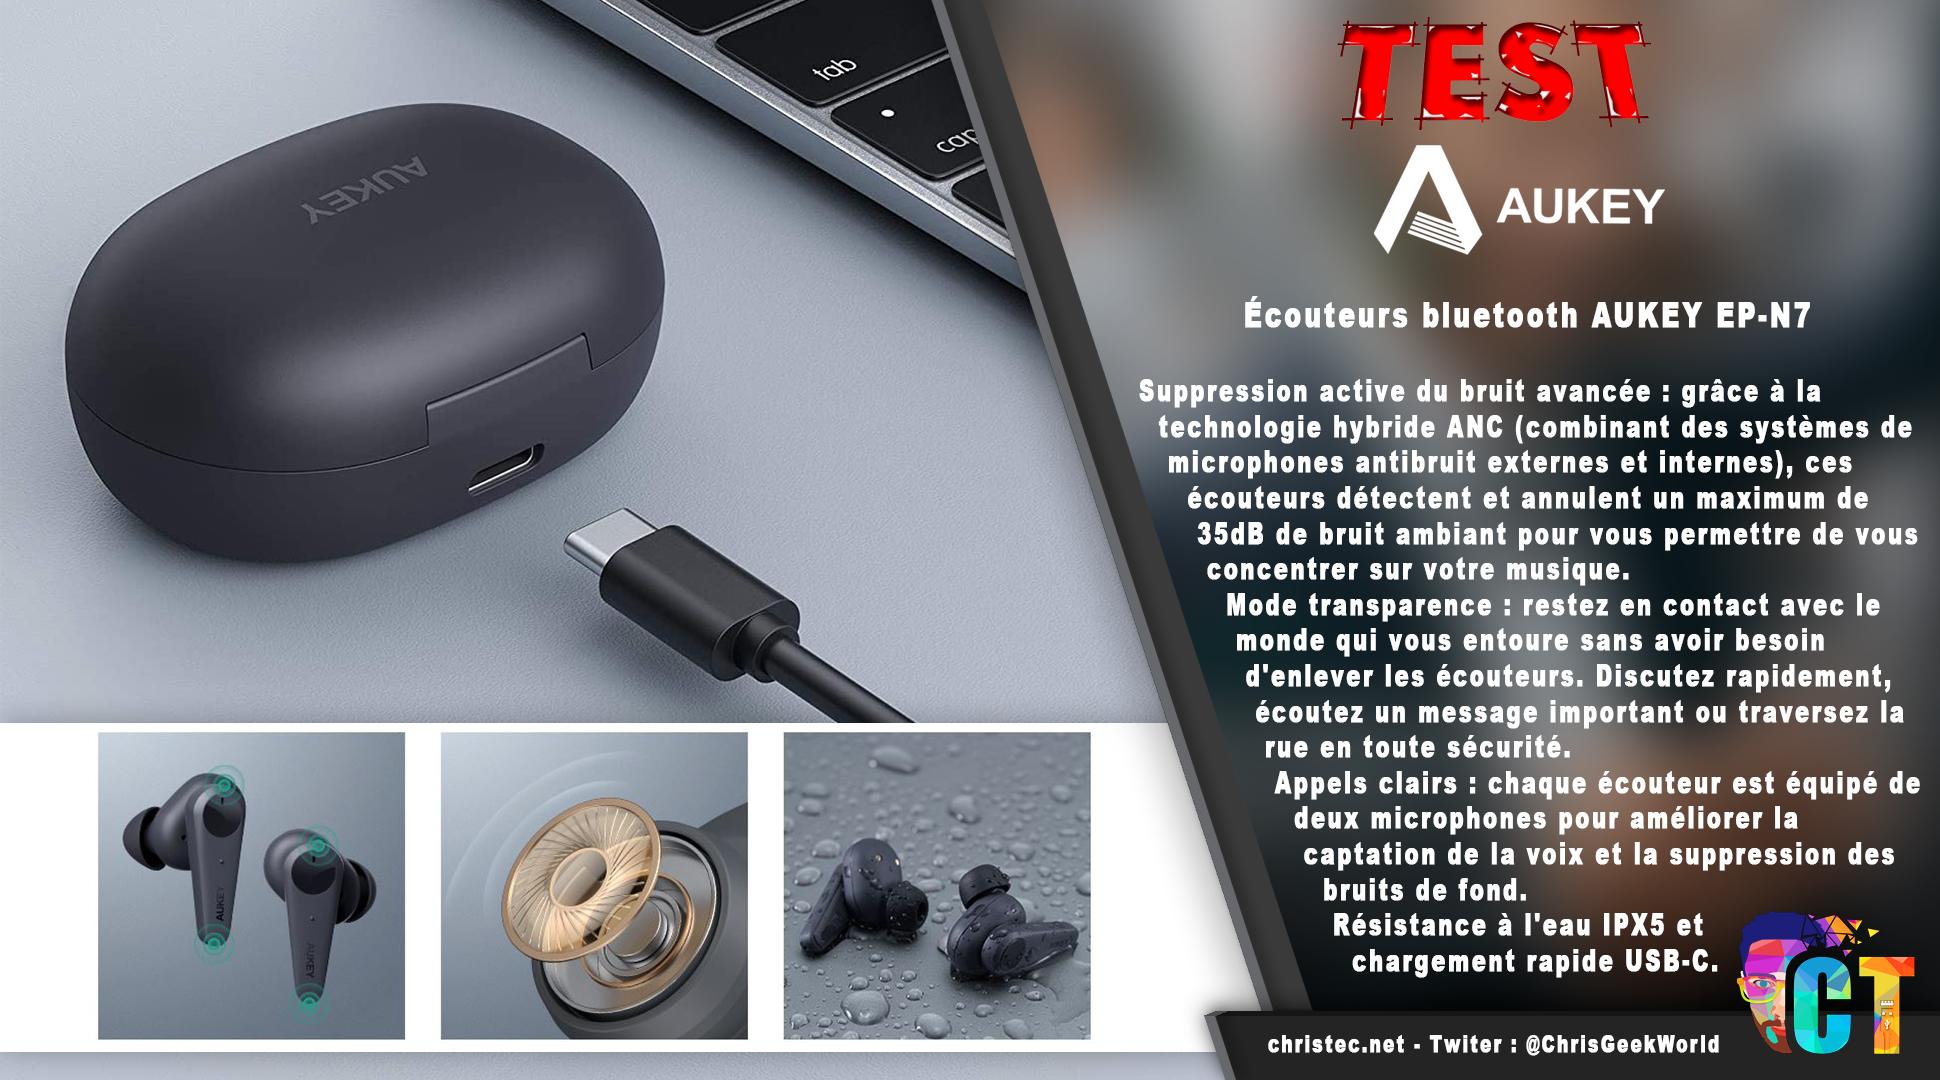 image en-tête Test des écouteurs Bluetooth Aukey EP-N7 avec réduction du Bruit active et mode transparence